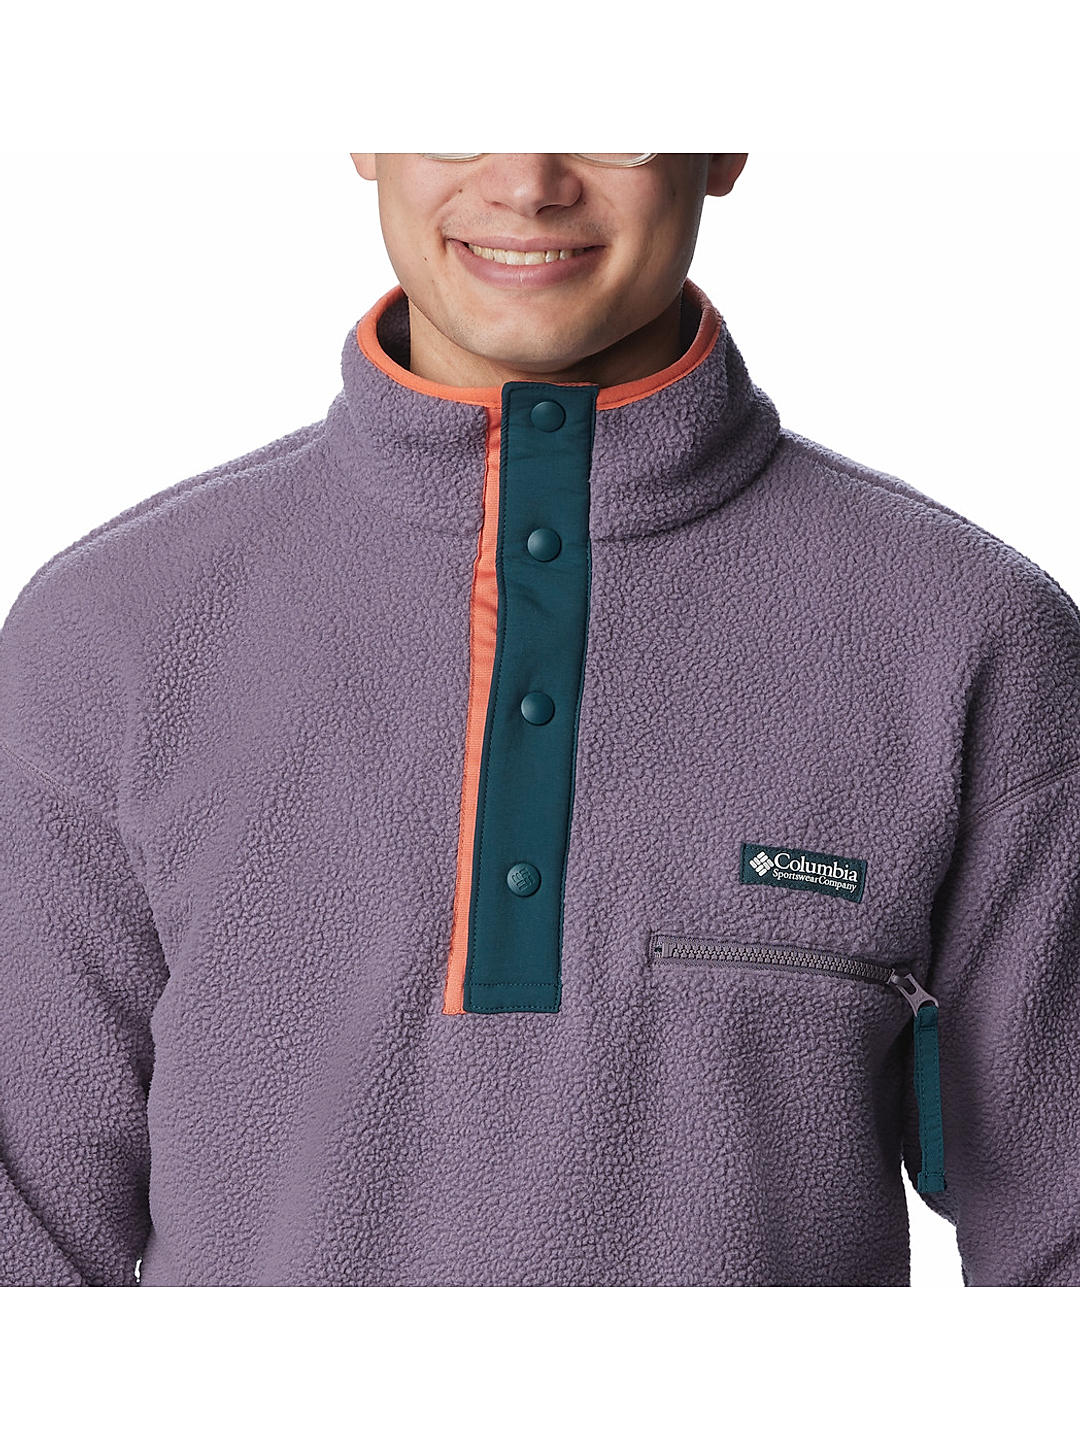 Columbia Sweater Weather 1/2-Zip Jacket - Men's - Clothing